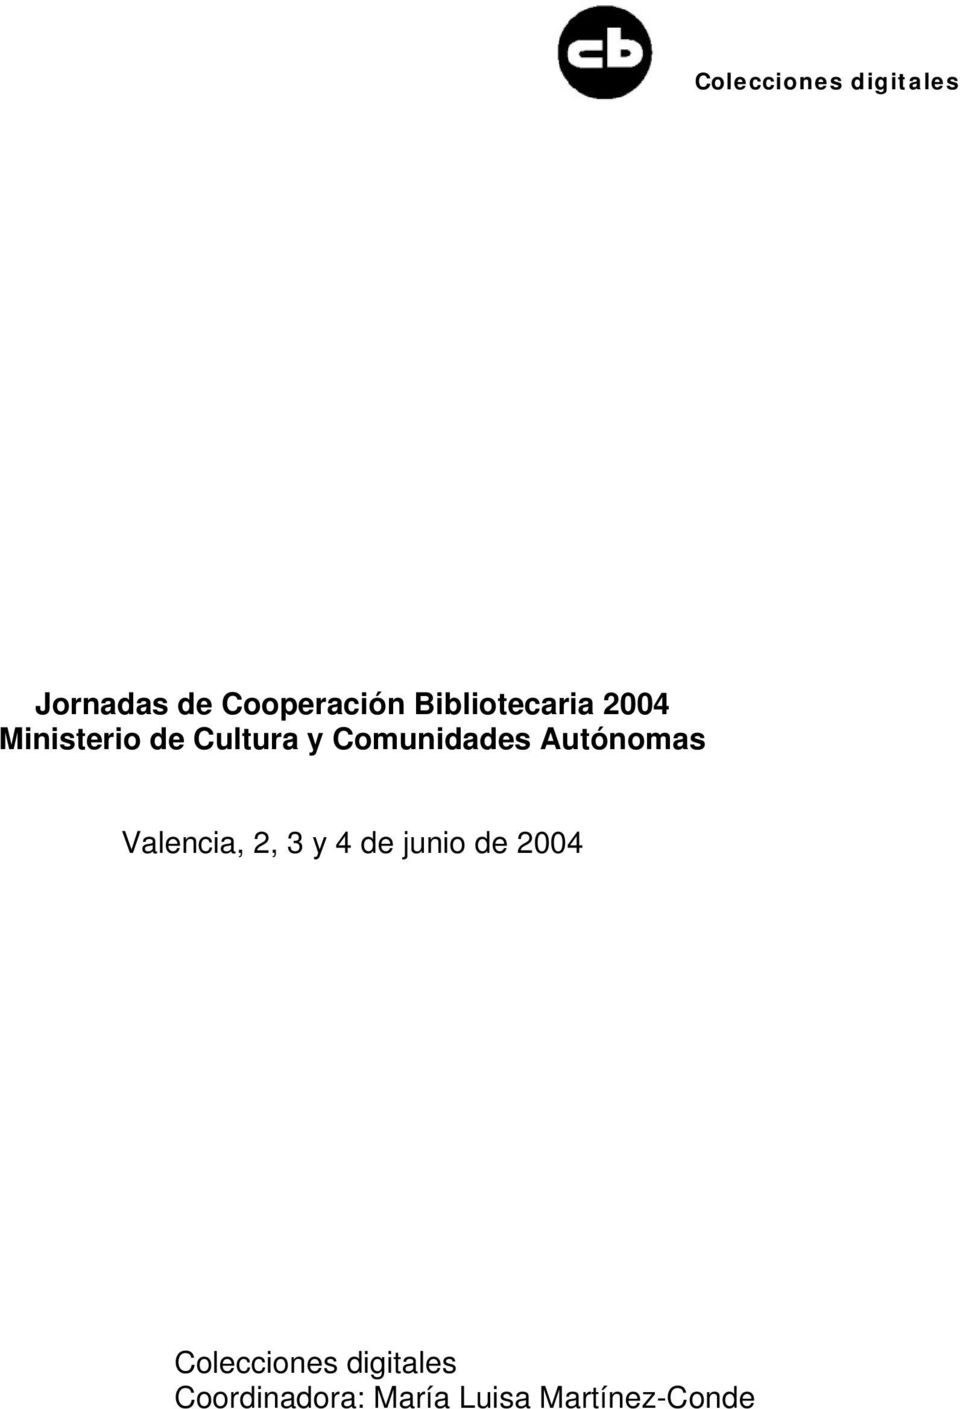 Valencia, 2, 3 y 4 de junio de 2004